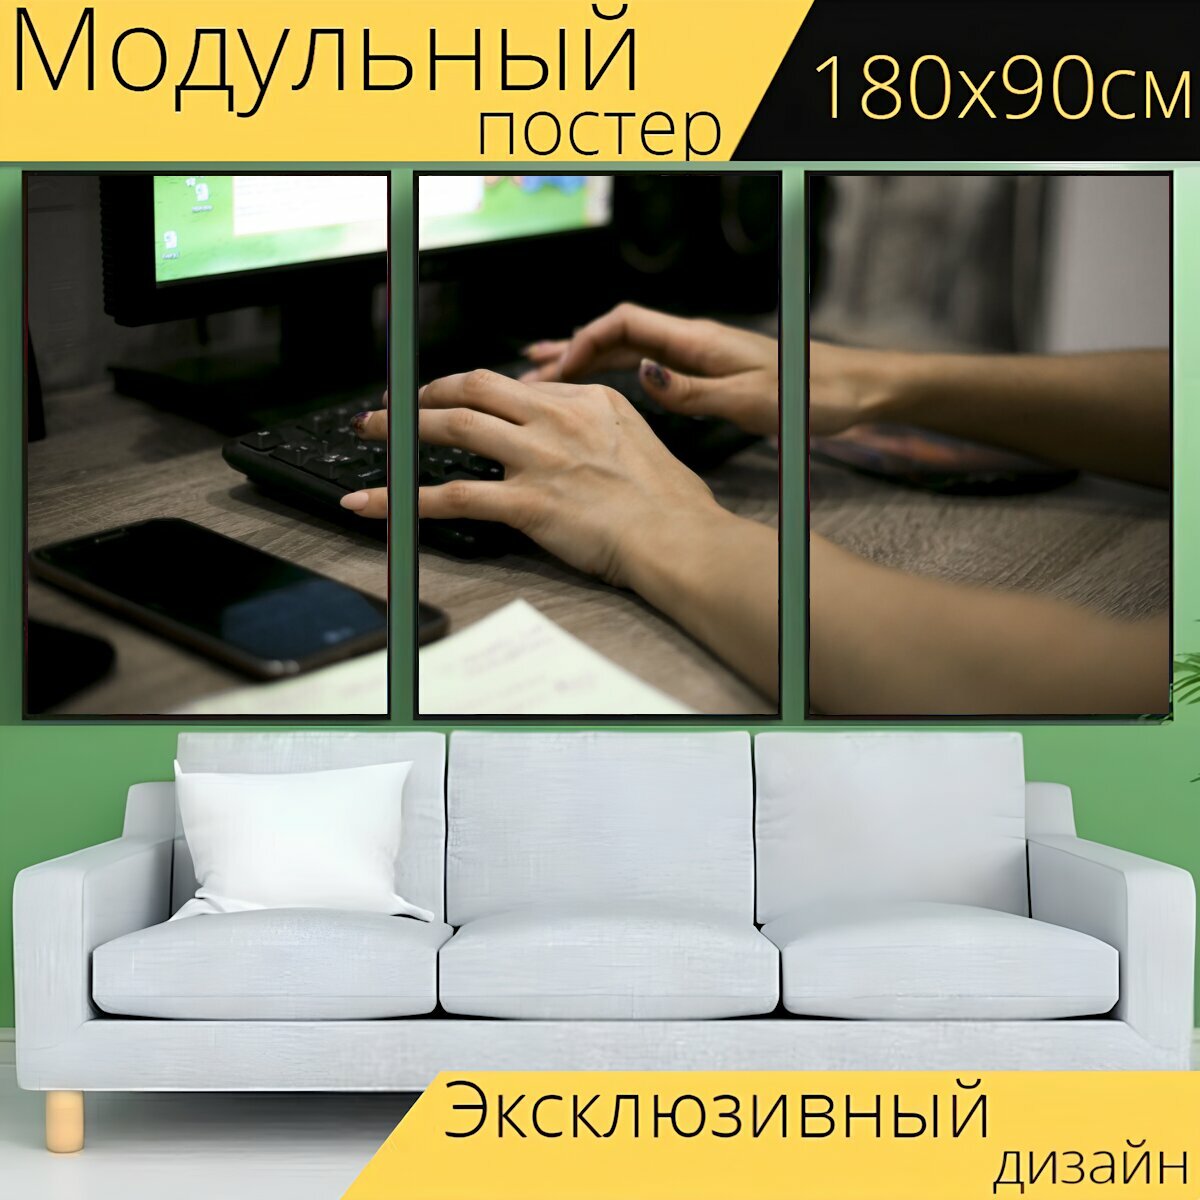 Модульный постер "Руки, клавиатура, мобильный телефон" 180 x 90 см. для интерьера